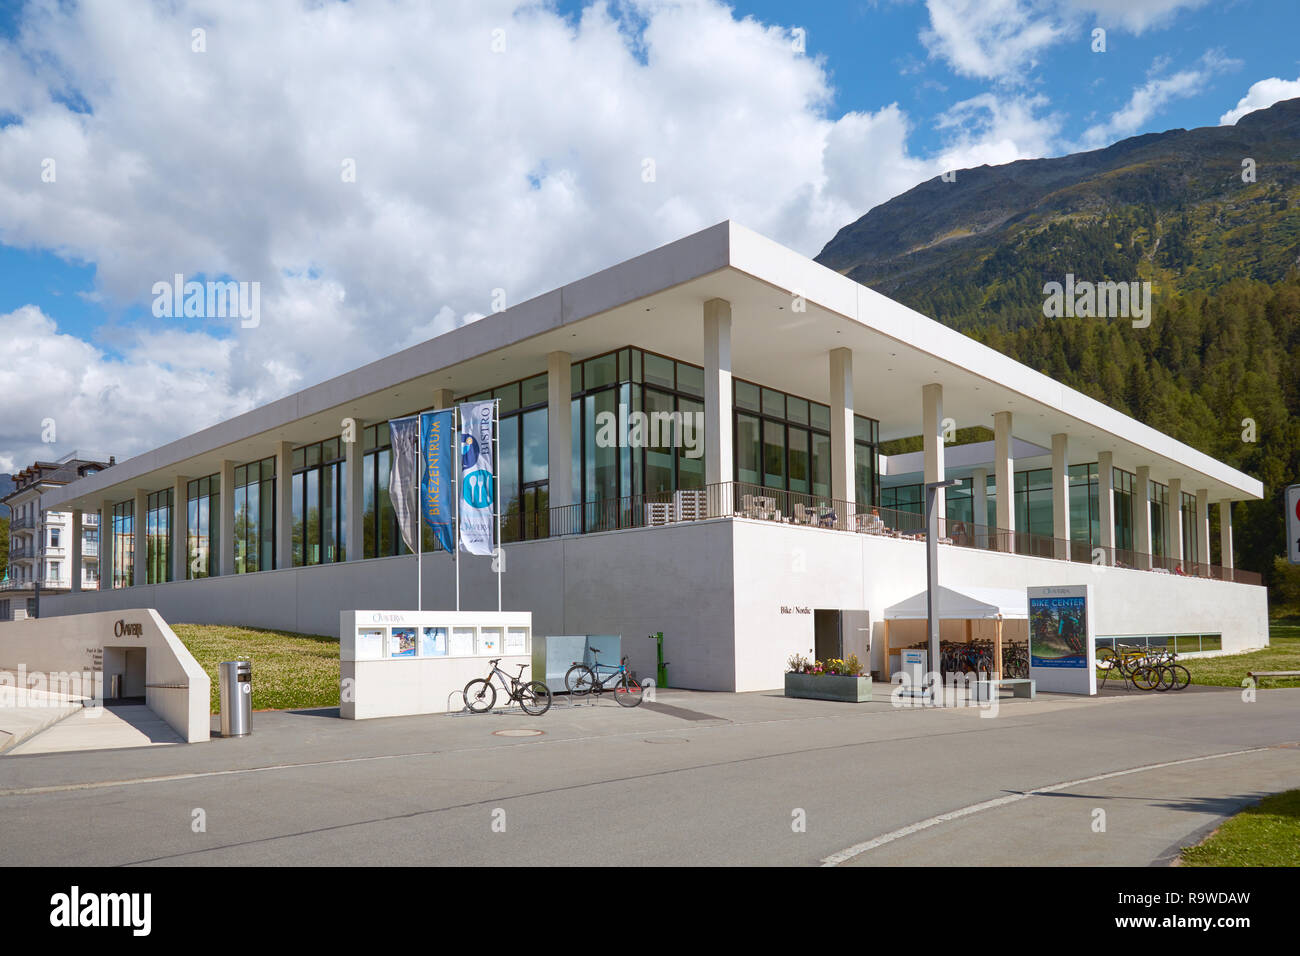 SANKT MORITZ, SWITZERLAND - AUGUST 16, 2018: Ovaverva luxury spa, modern building in Sankt Moritz, Switzerland Stock Photo